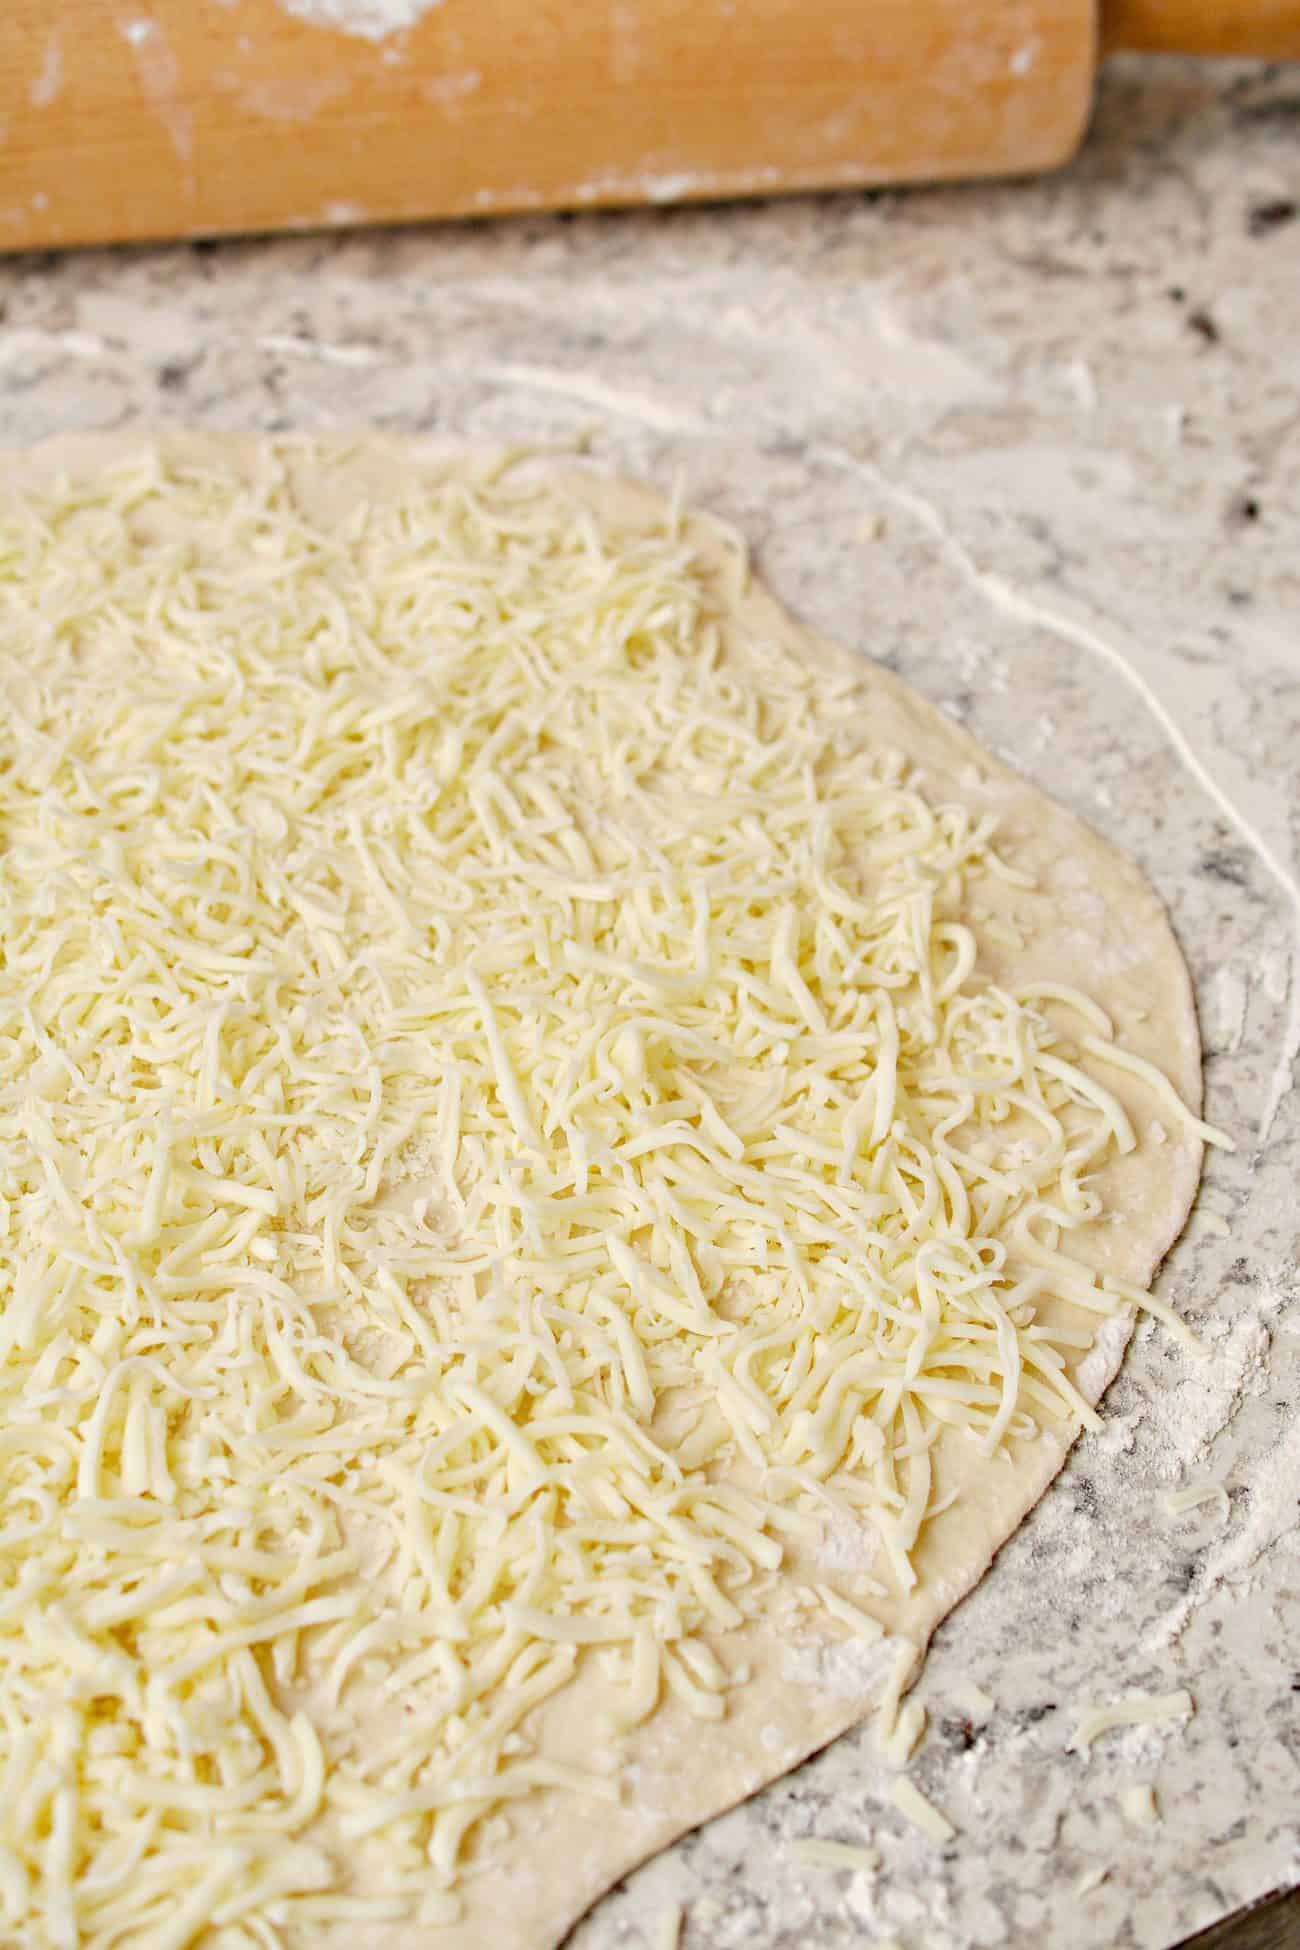 Layer the mozzarella along the top of the dough.